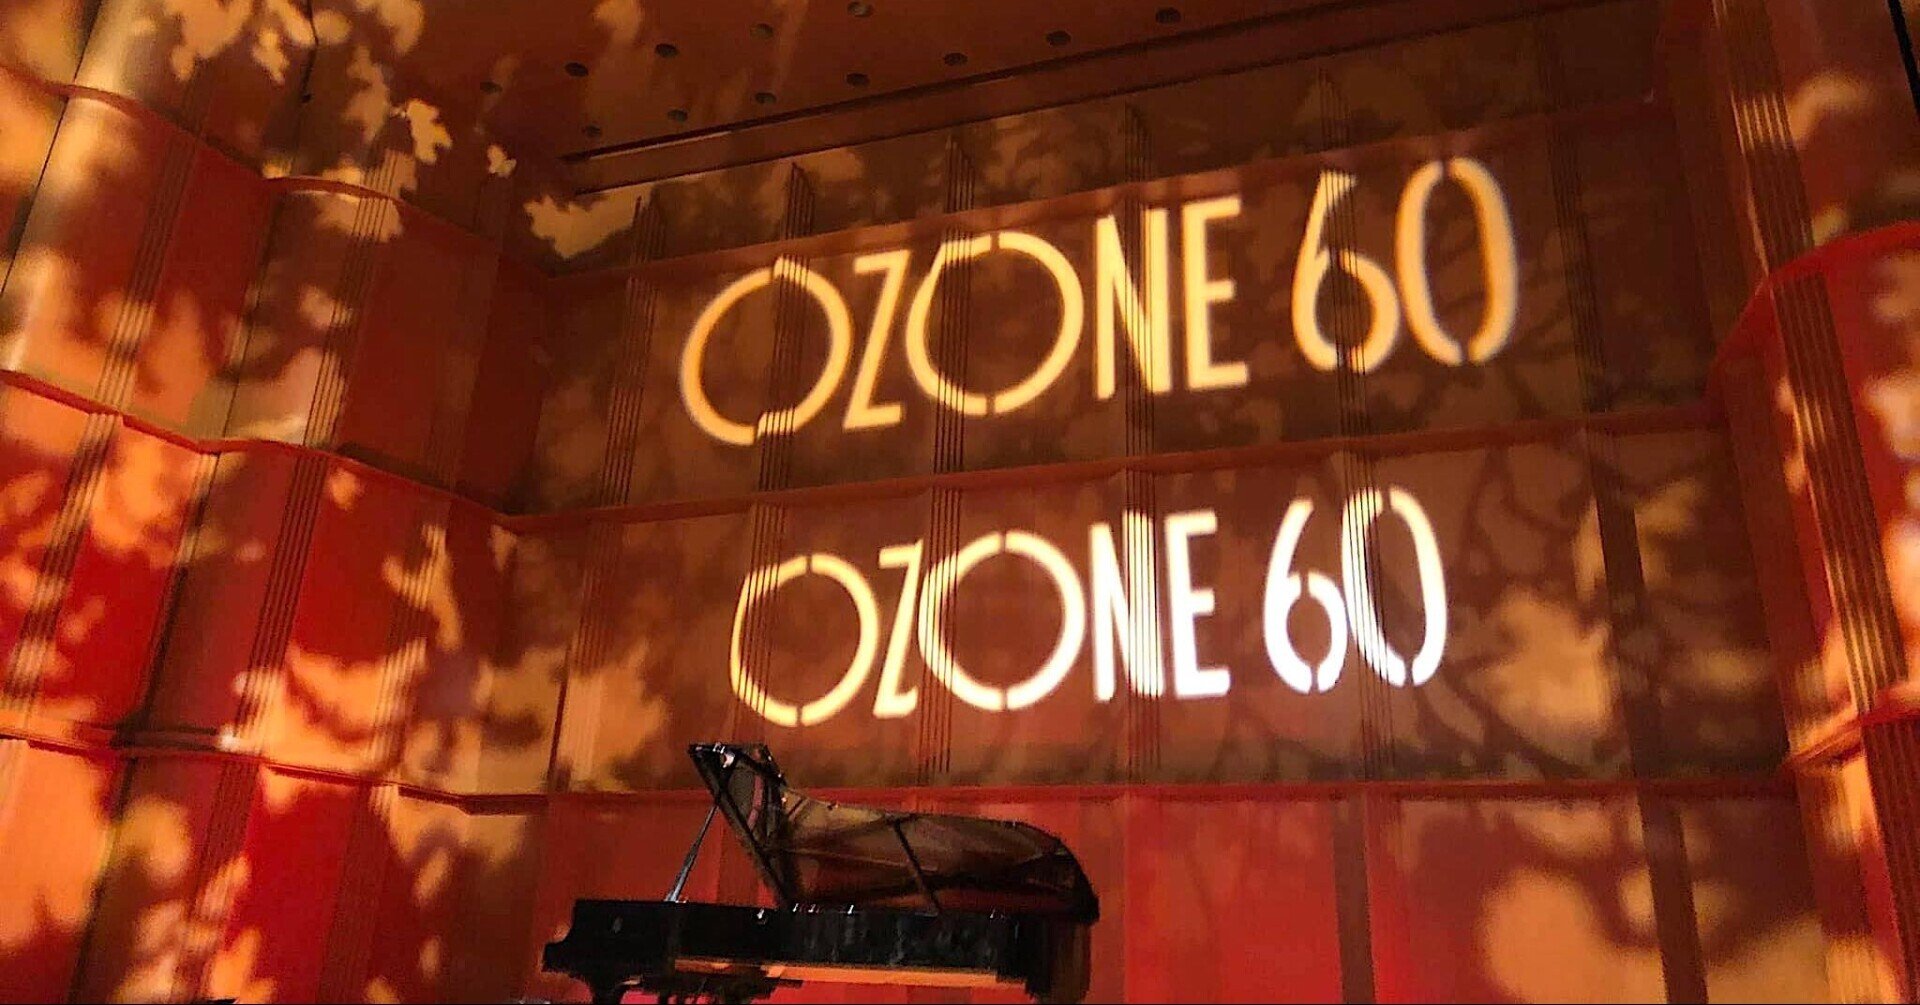 小曽根 真 2021 「OZONE 60」総セットリスト Makoto Ozone - Set Lists 2021｜Hideo Kanno